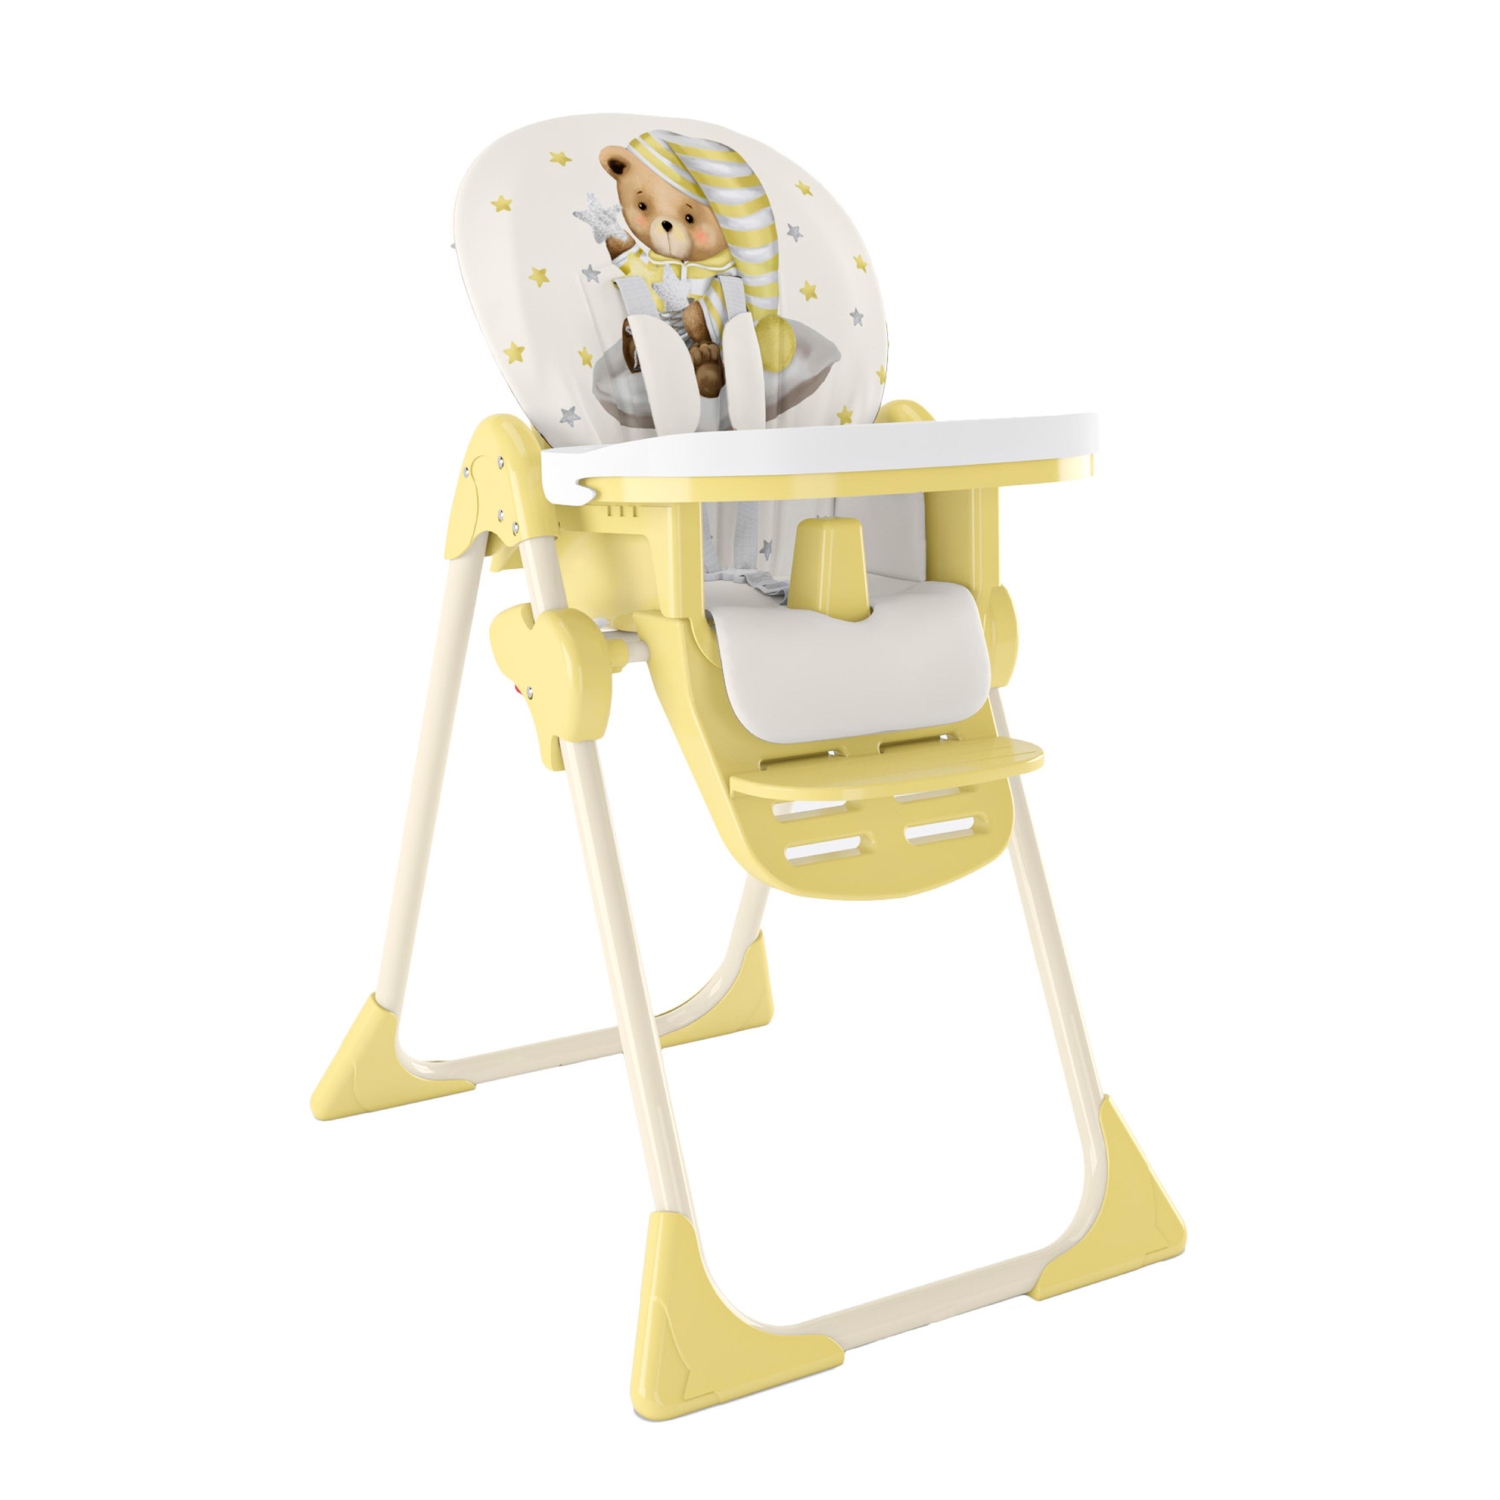 Стульчик для кормления Globex Космик NEW складной желтый стульчик для кормления globex космик